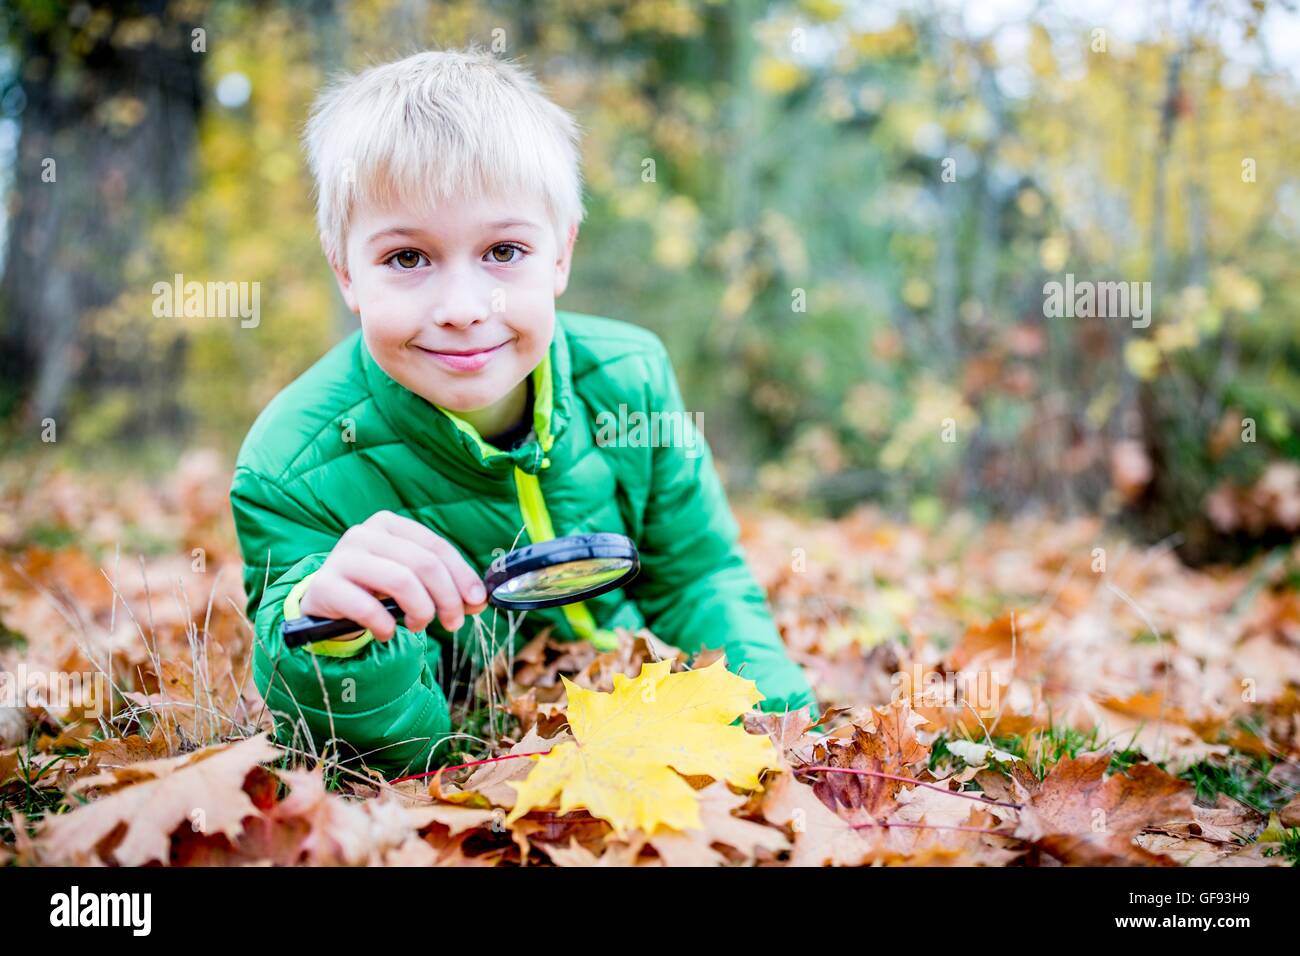 Parution du modèle. Boy holding loupe sur feuille d'automne, smiling, portrait. Banque D'Images